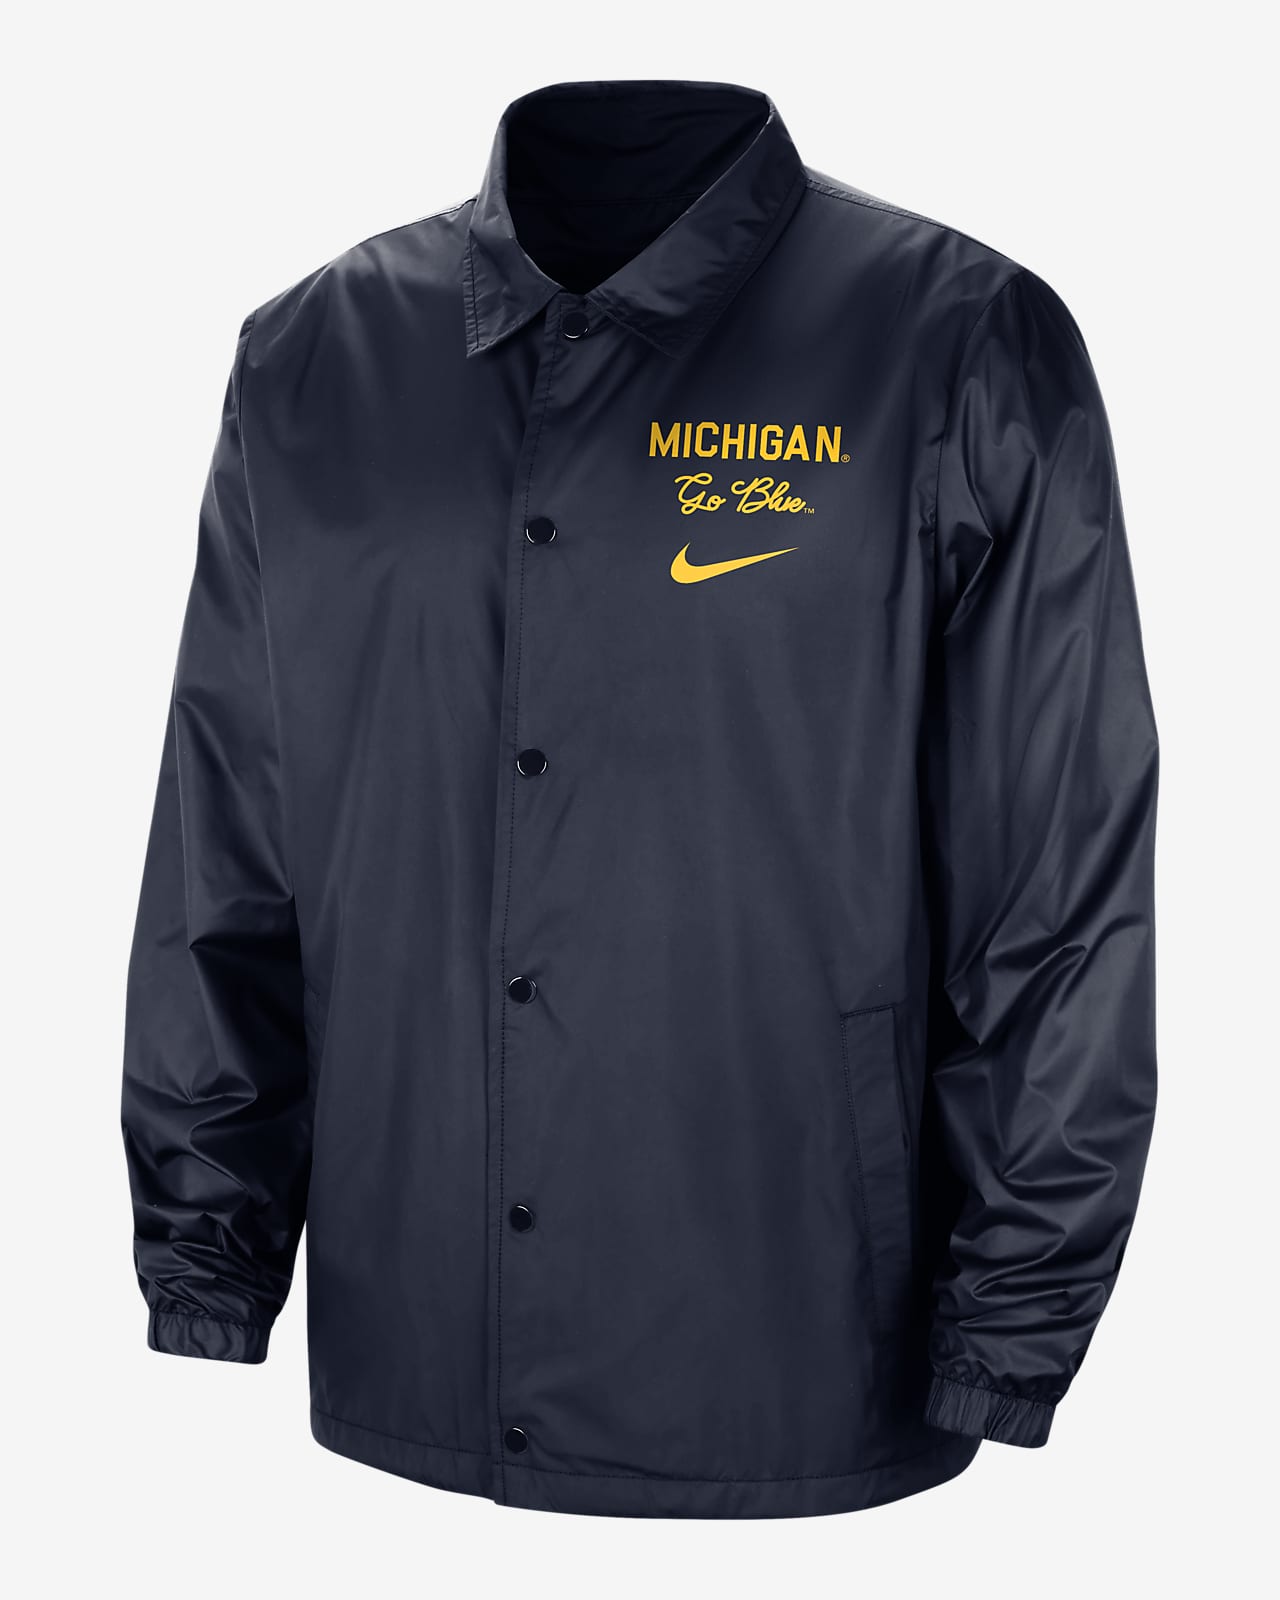 Michigan Men's Nike College Jacket